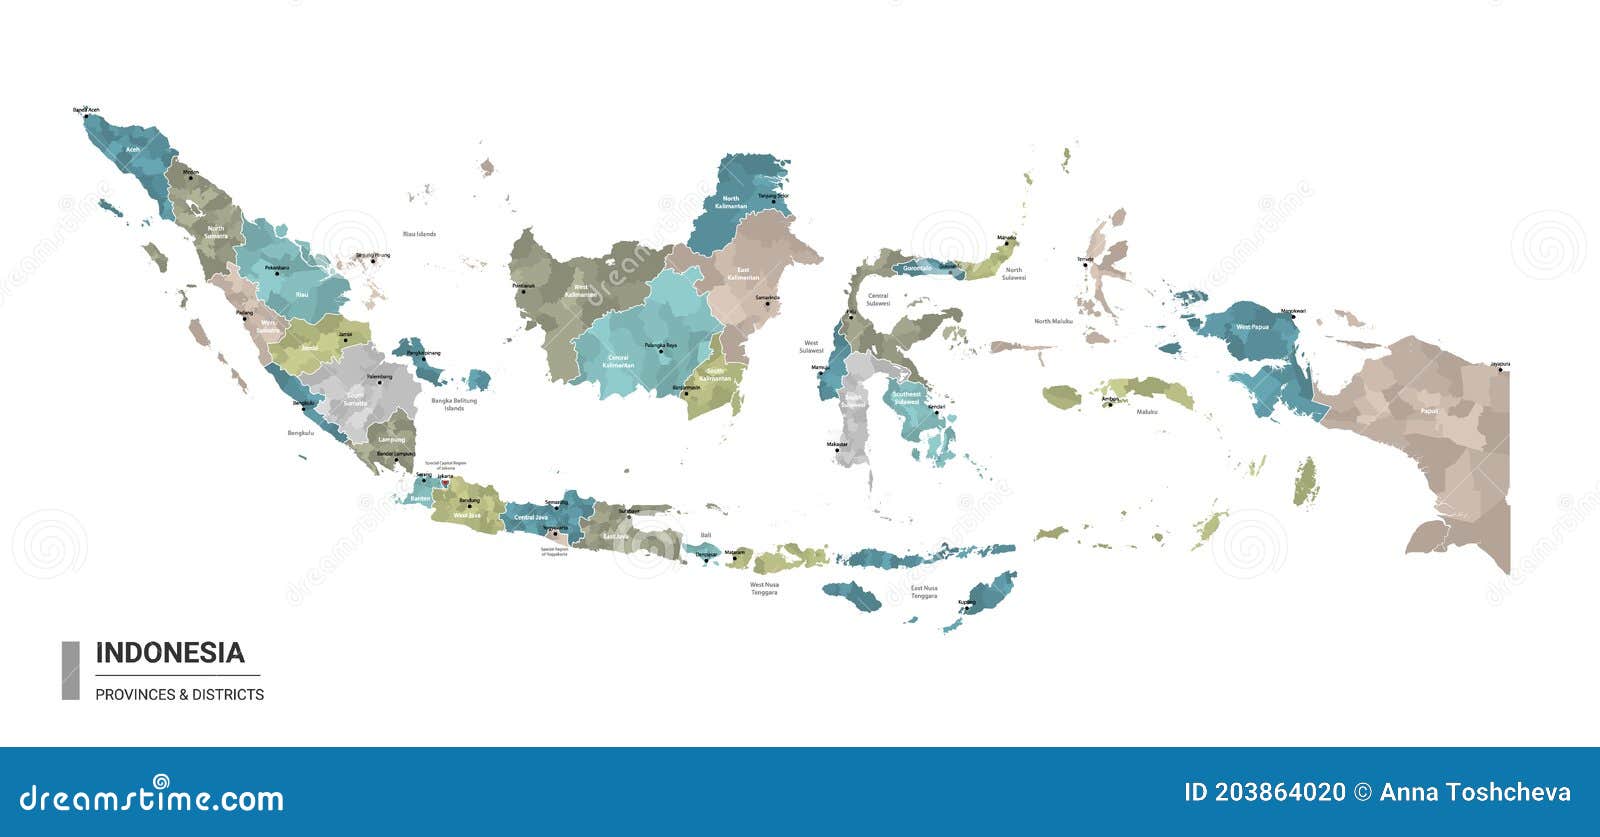 印尼宣布将首都迁至东加里曼丹省，未来印尼或分裂？！ - 知乎